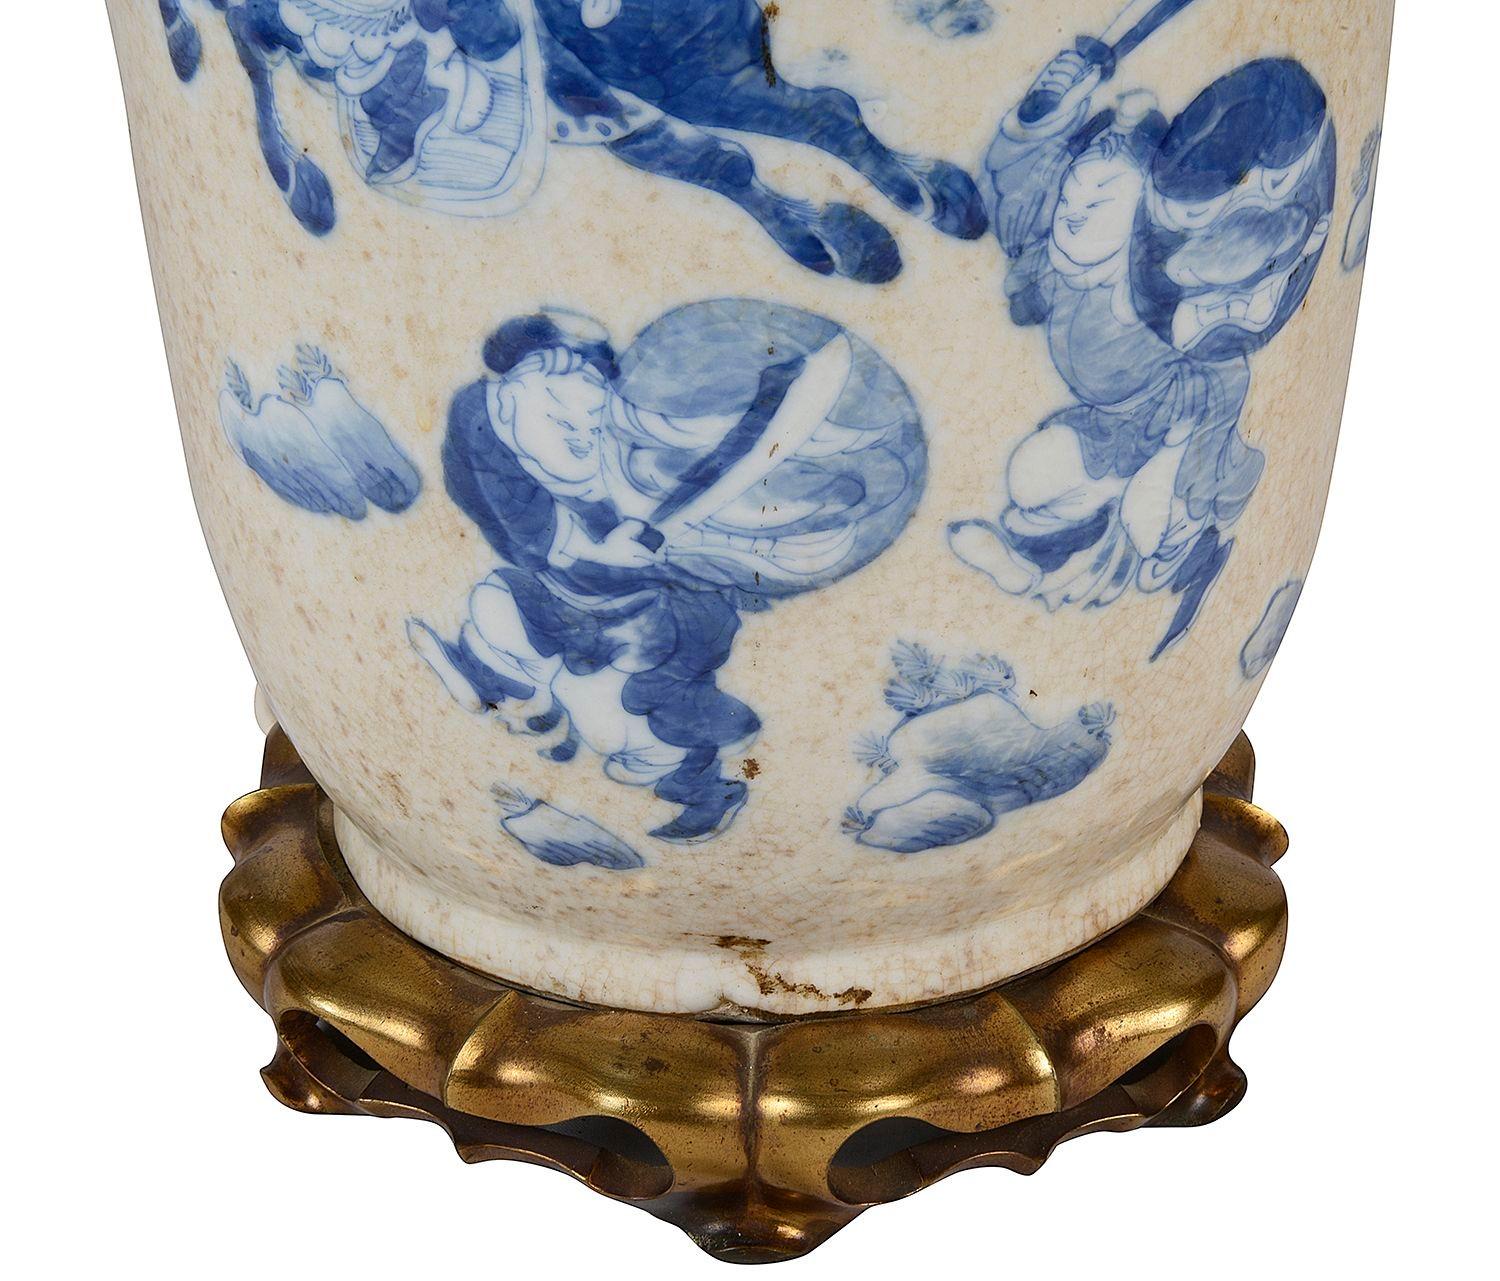 Chinesische blau-weiße Vase/Lampe aus dem 19. Jahrhundert, 56 cm (22